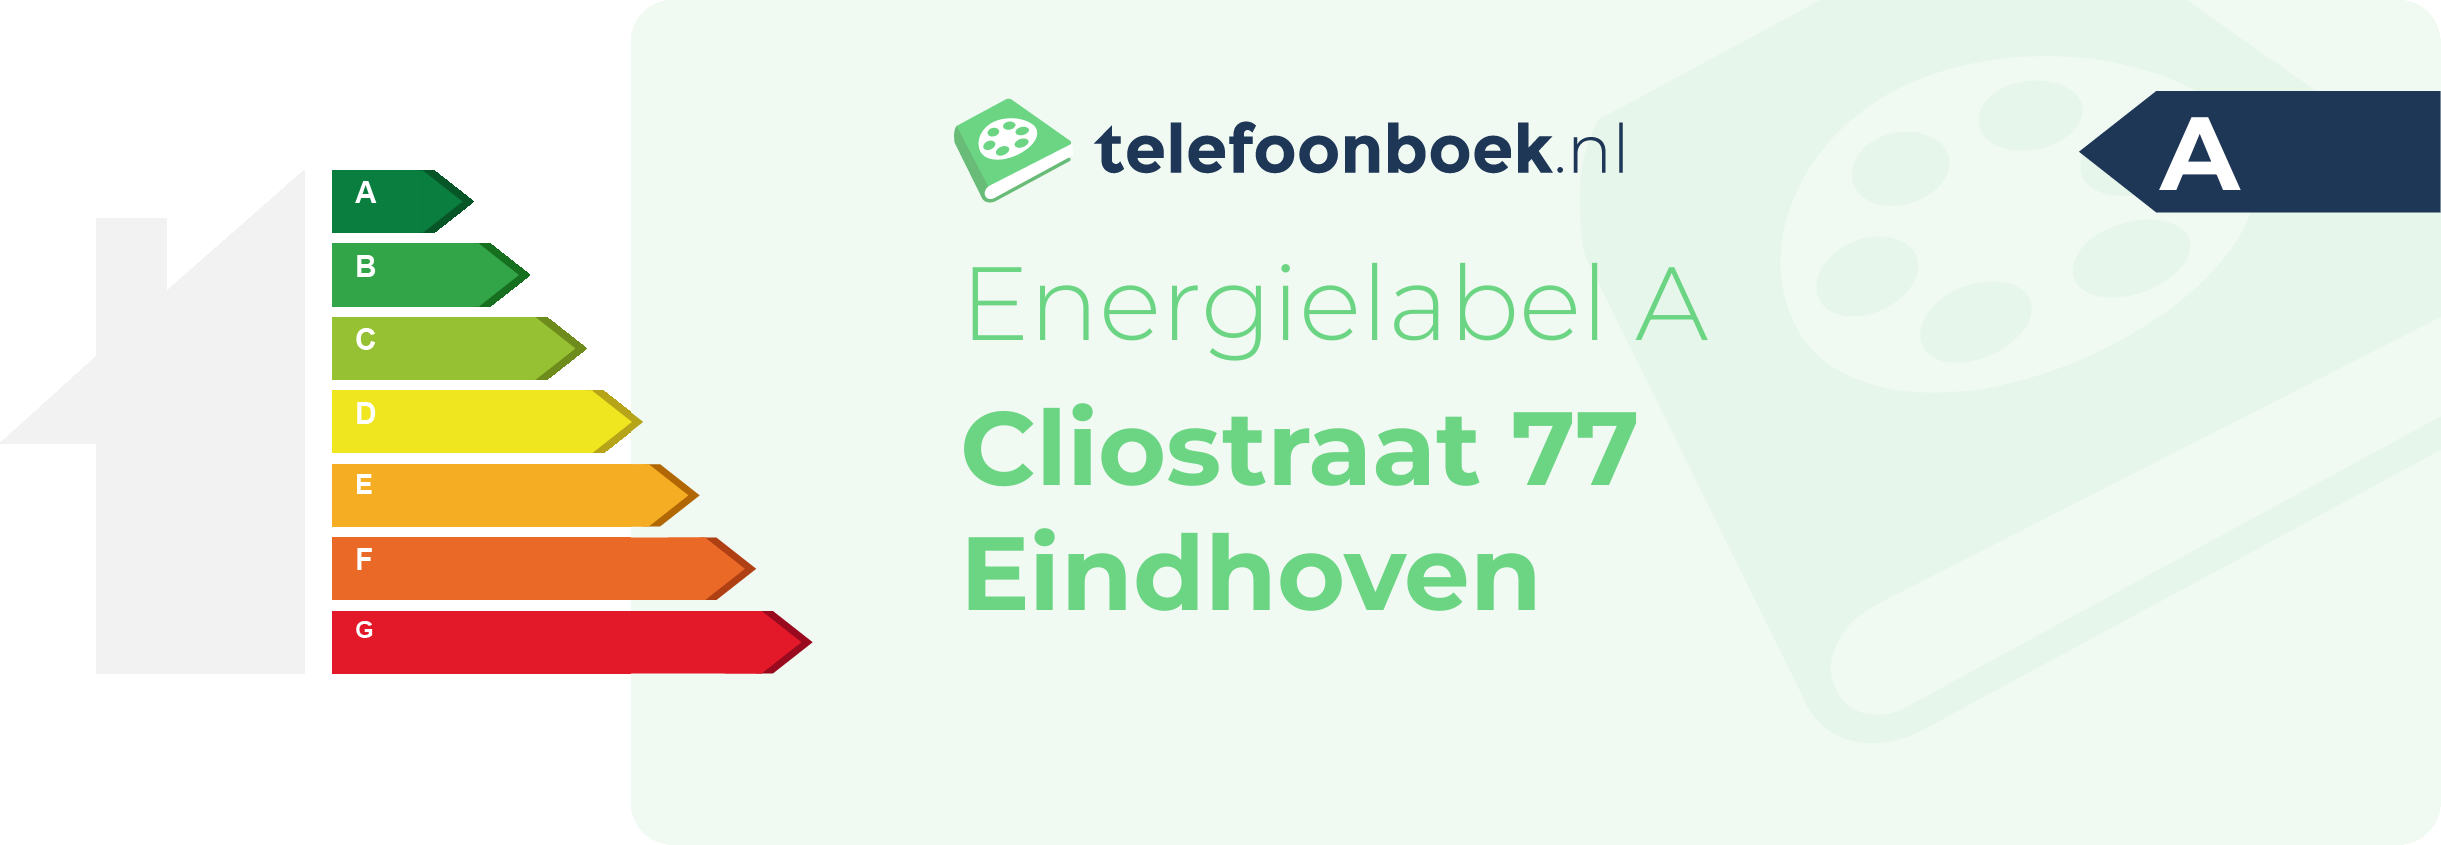 Energielabel Cliostraat 77 Eindhoven